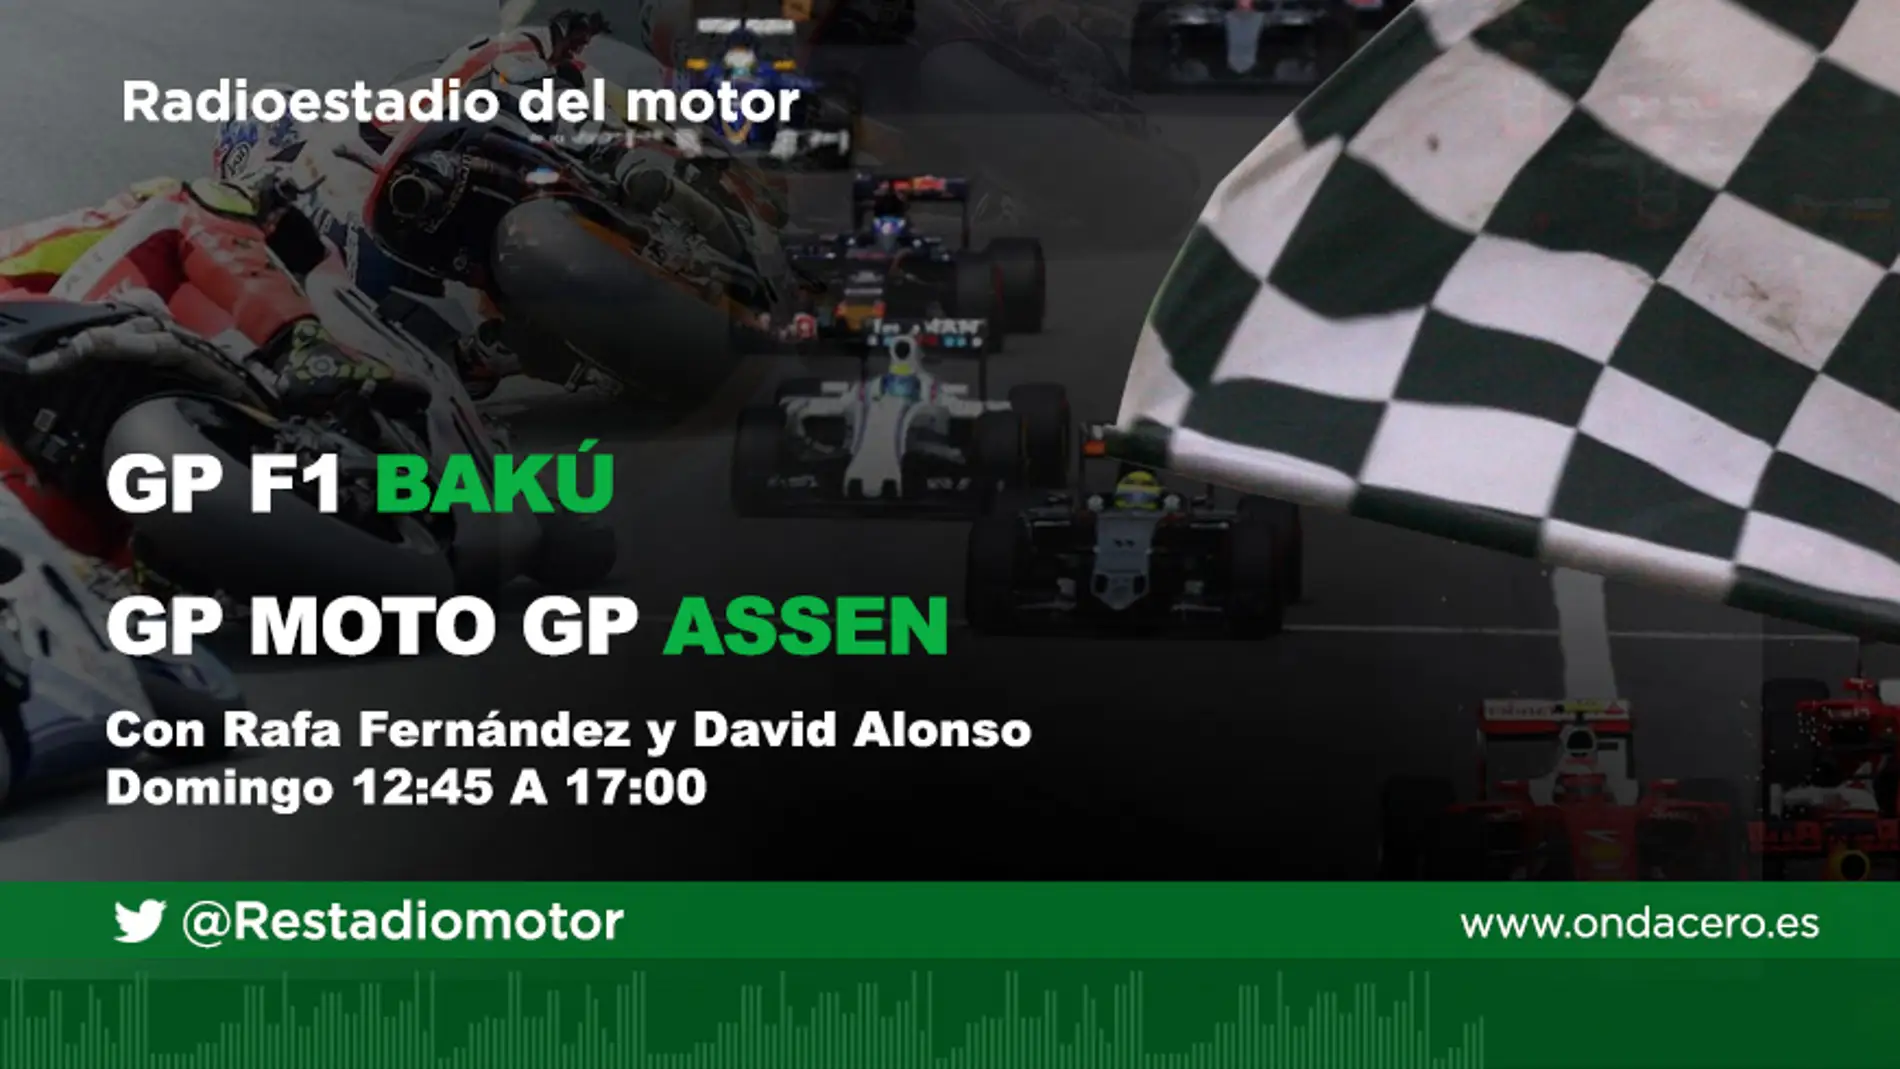 Radioestadio del Motor. GP de Bakú de F1 y GP de Assen de Moto GP